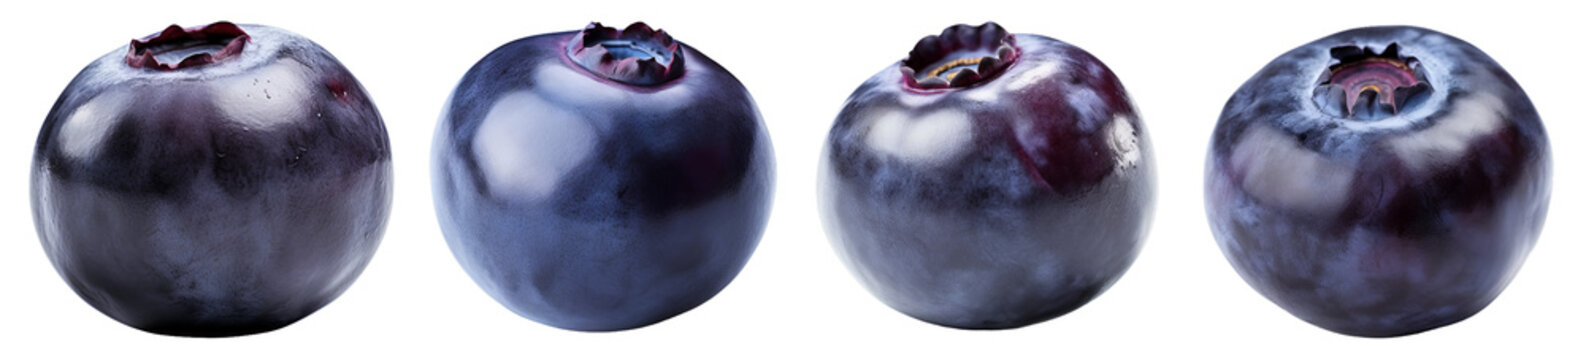 Blueberry fruit on transparent background. Generative AI image